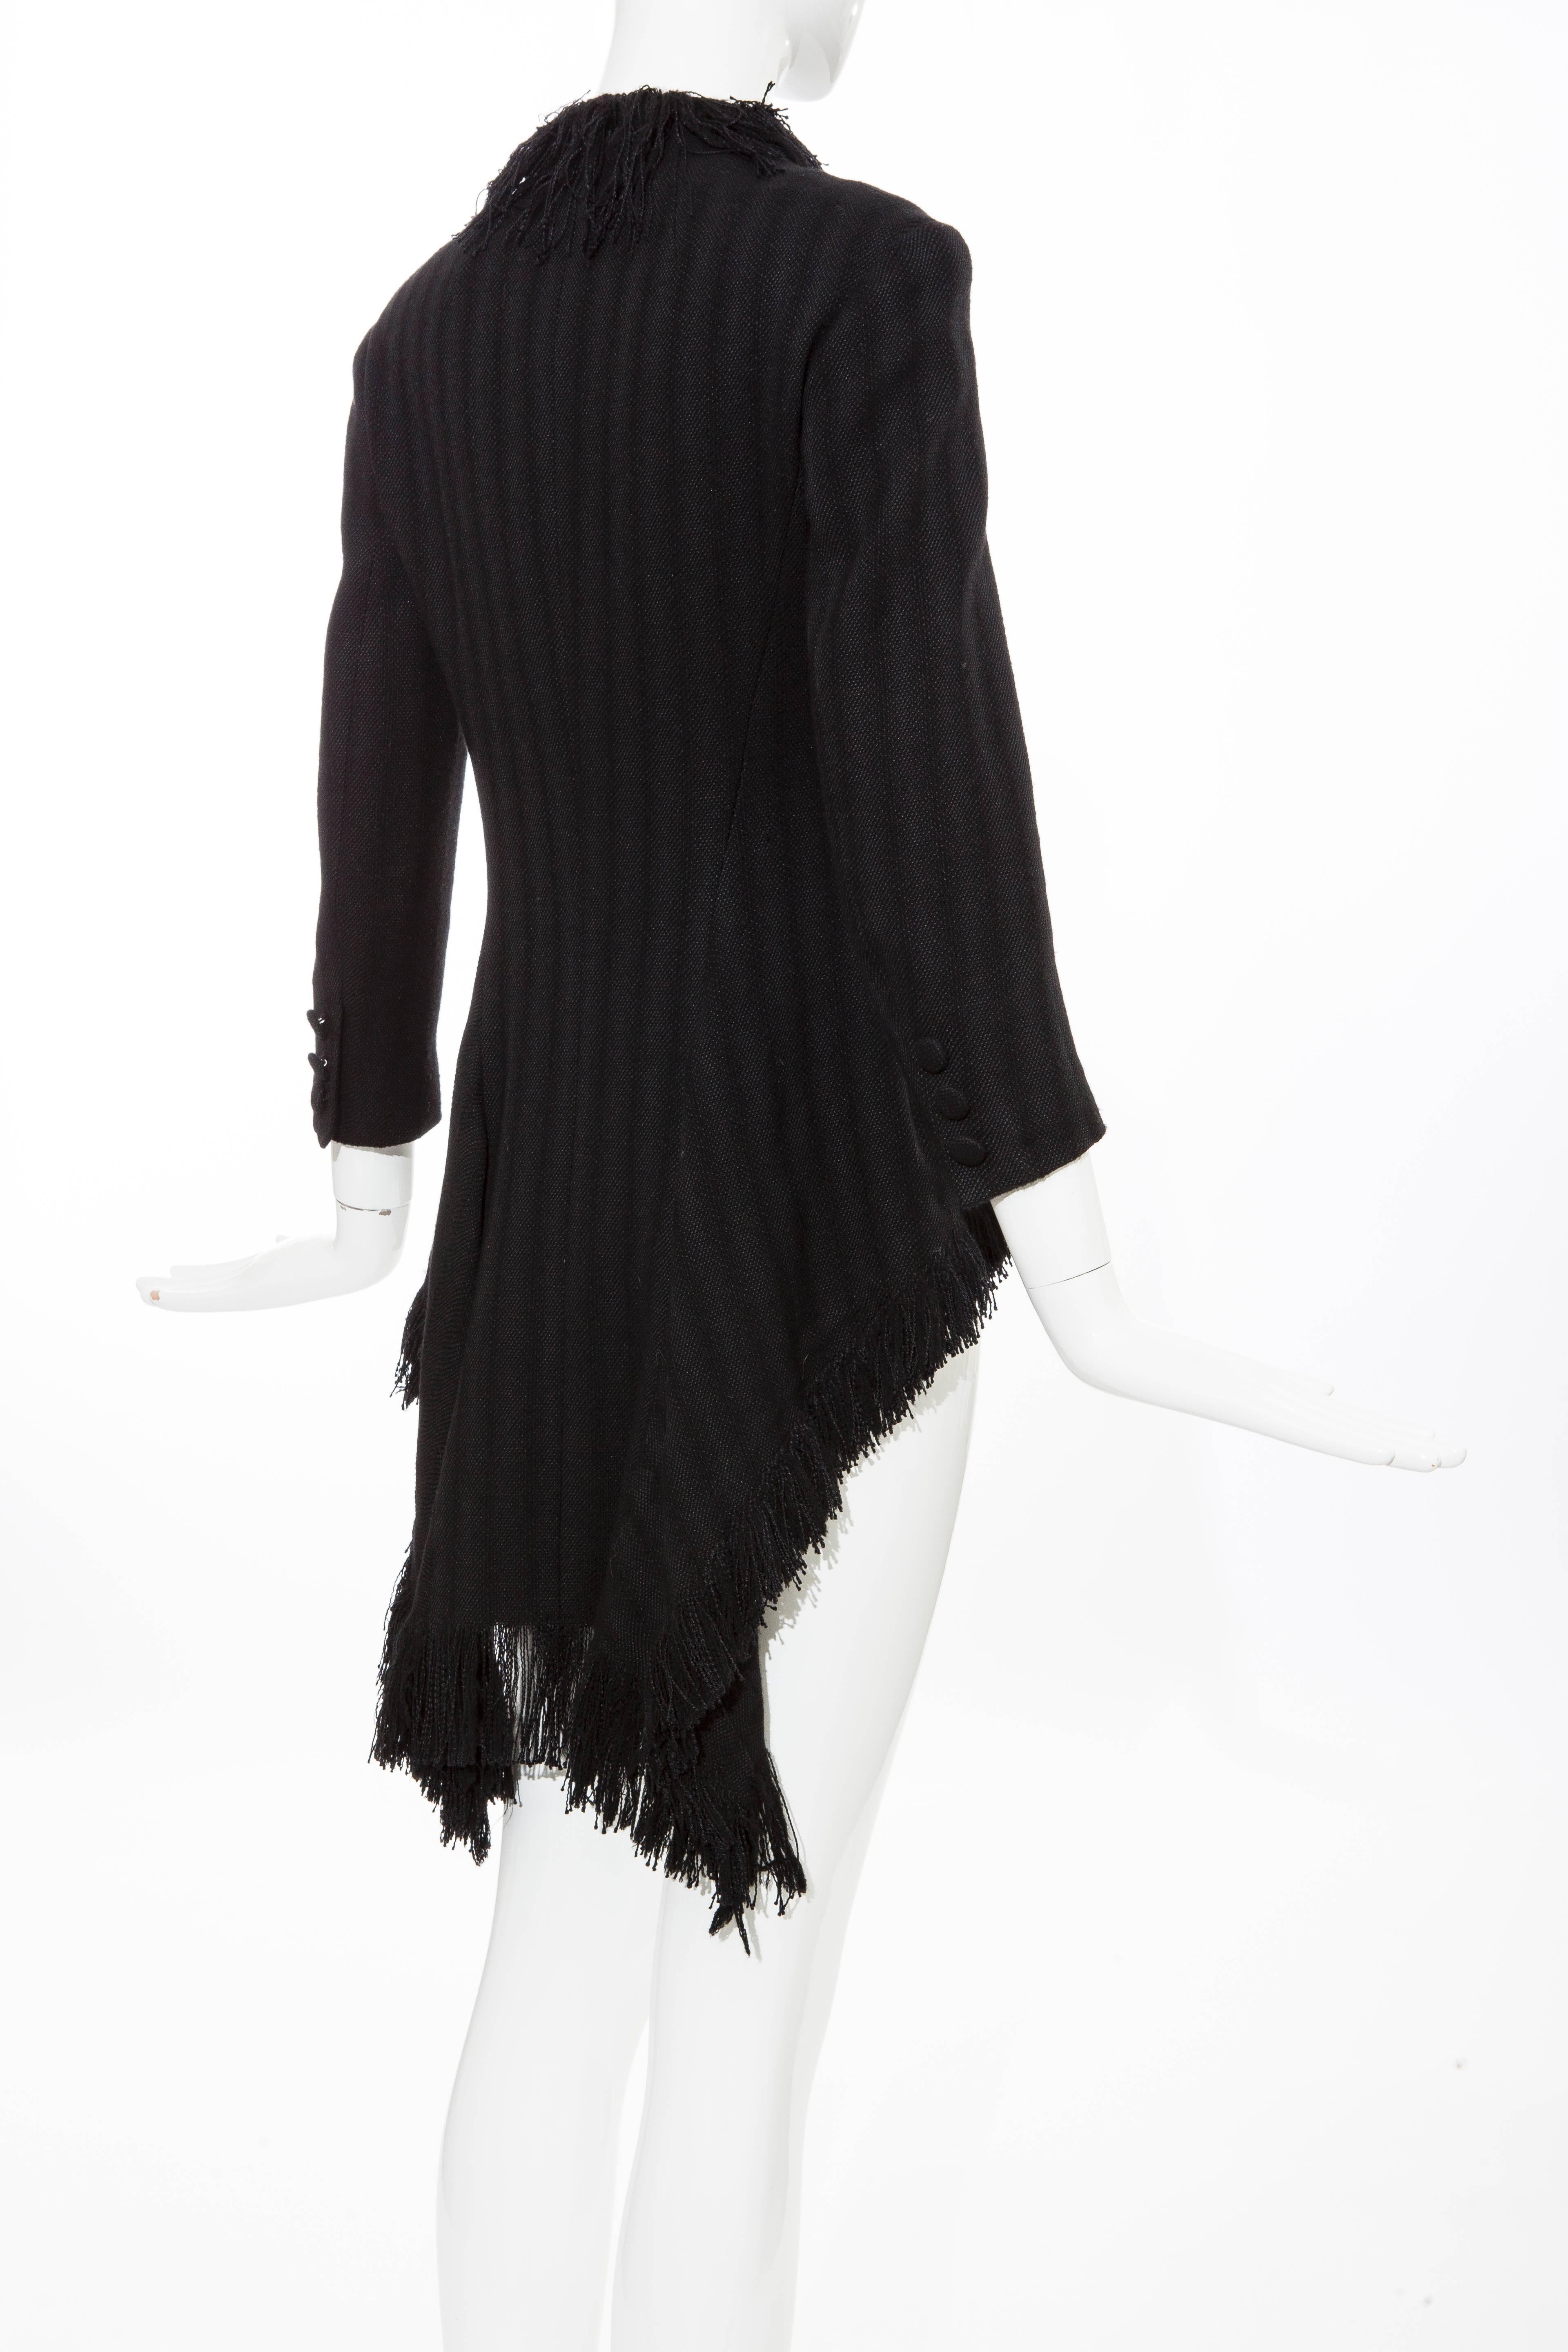 Yohji Yamamoto Black Silk Wool Tweed Cutaway Jacket With Fringe Trim, Fall 2013 For Sale 5